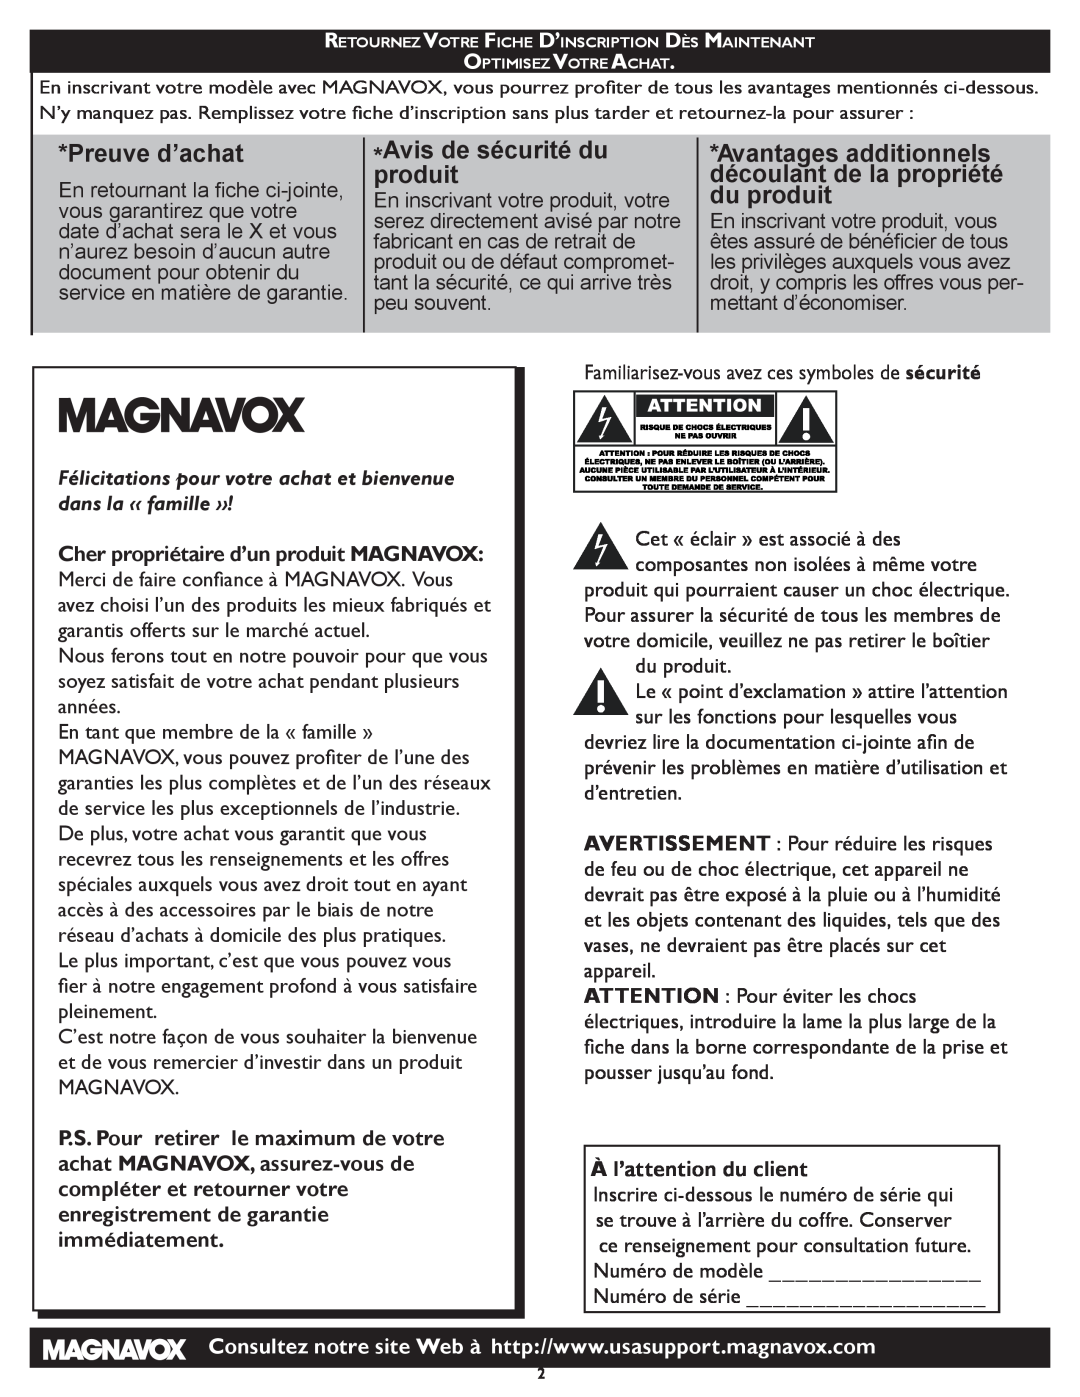 Magnavox 331D Preuve d’achat, Avis de sécurité du produit, Avantages additionnels découlant de la propriété du produit 